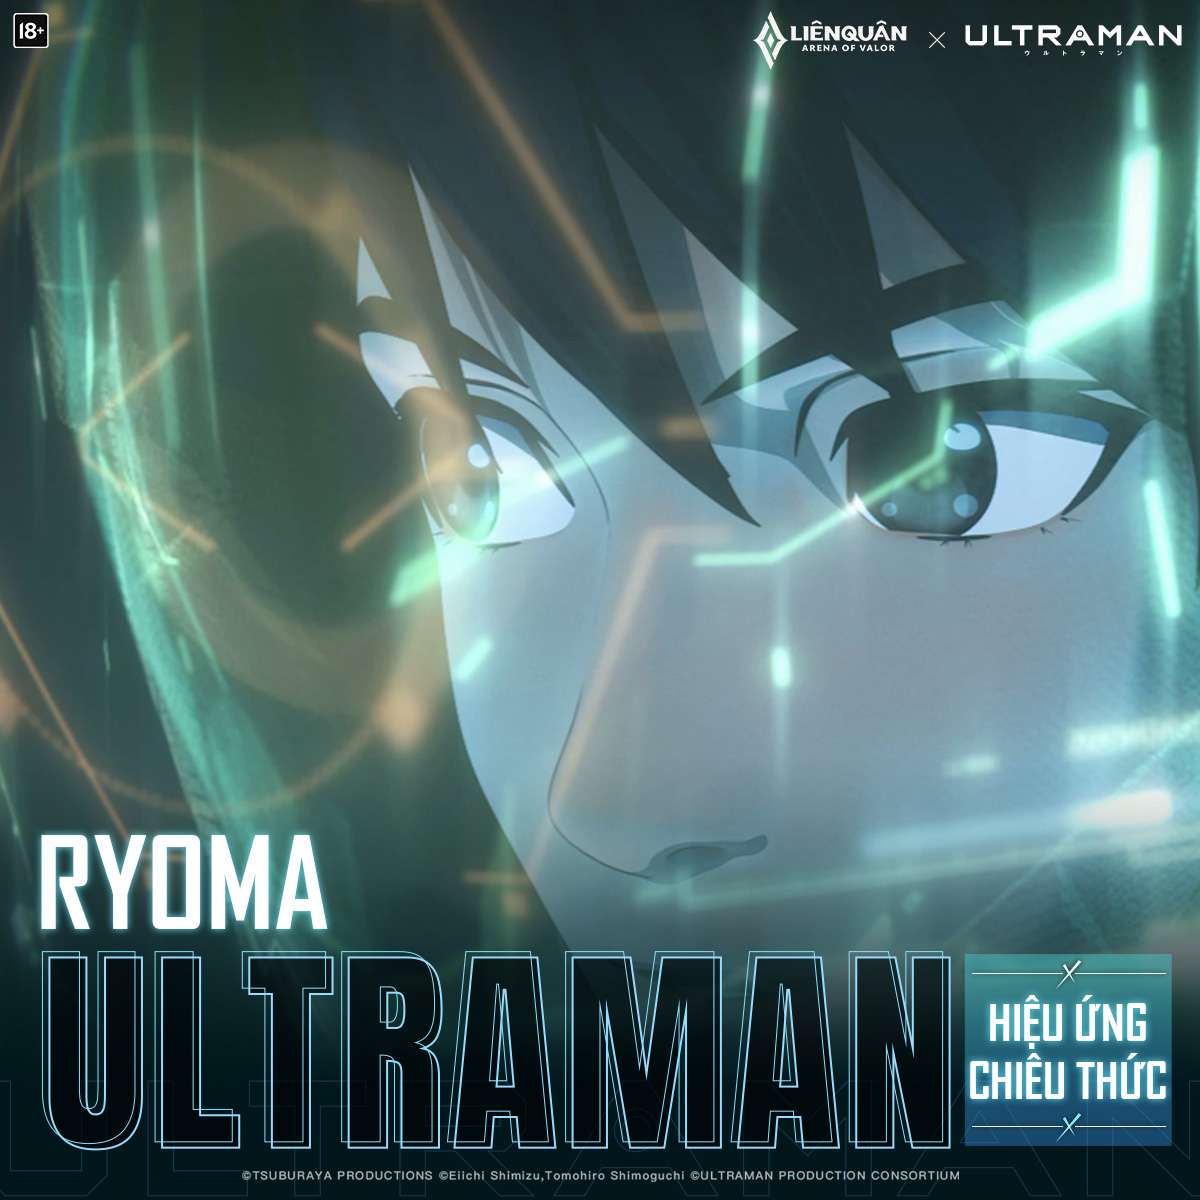 Liên quân Free Trang phục Ultraman Florentino Seven và Ryoma Ultraman [Full  hiệu ứng] TNG - YouTube